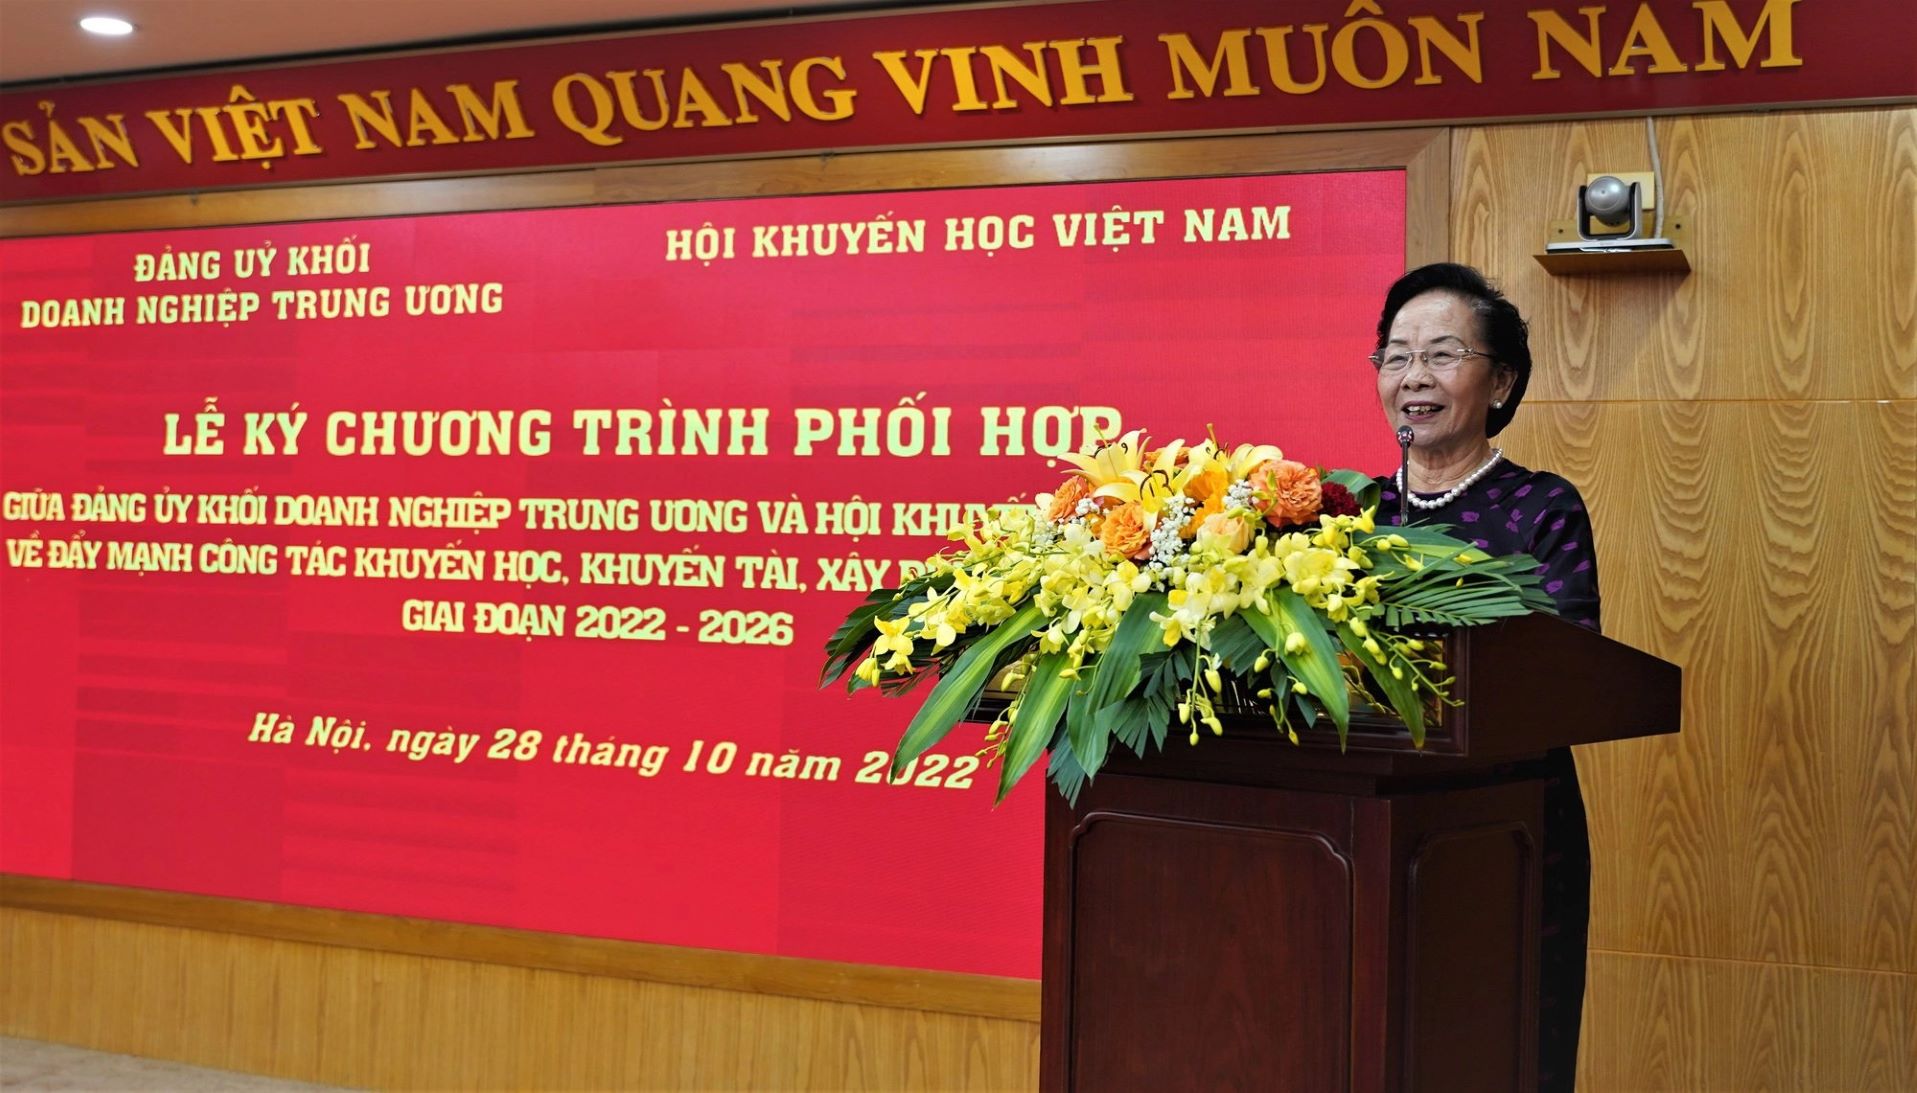 Hội Khuyến học Việt Nam và Đảng ủy Khối Doanh nghiệp Trung ương phối hợp đẩy mạnh các hoạt động khuyến học